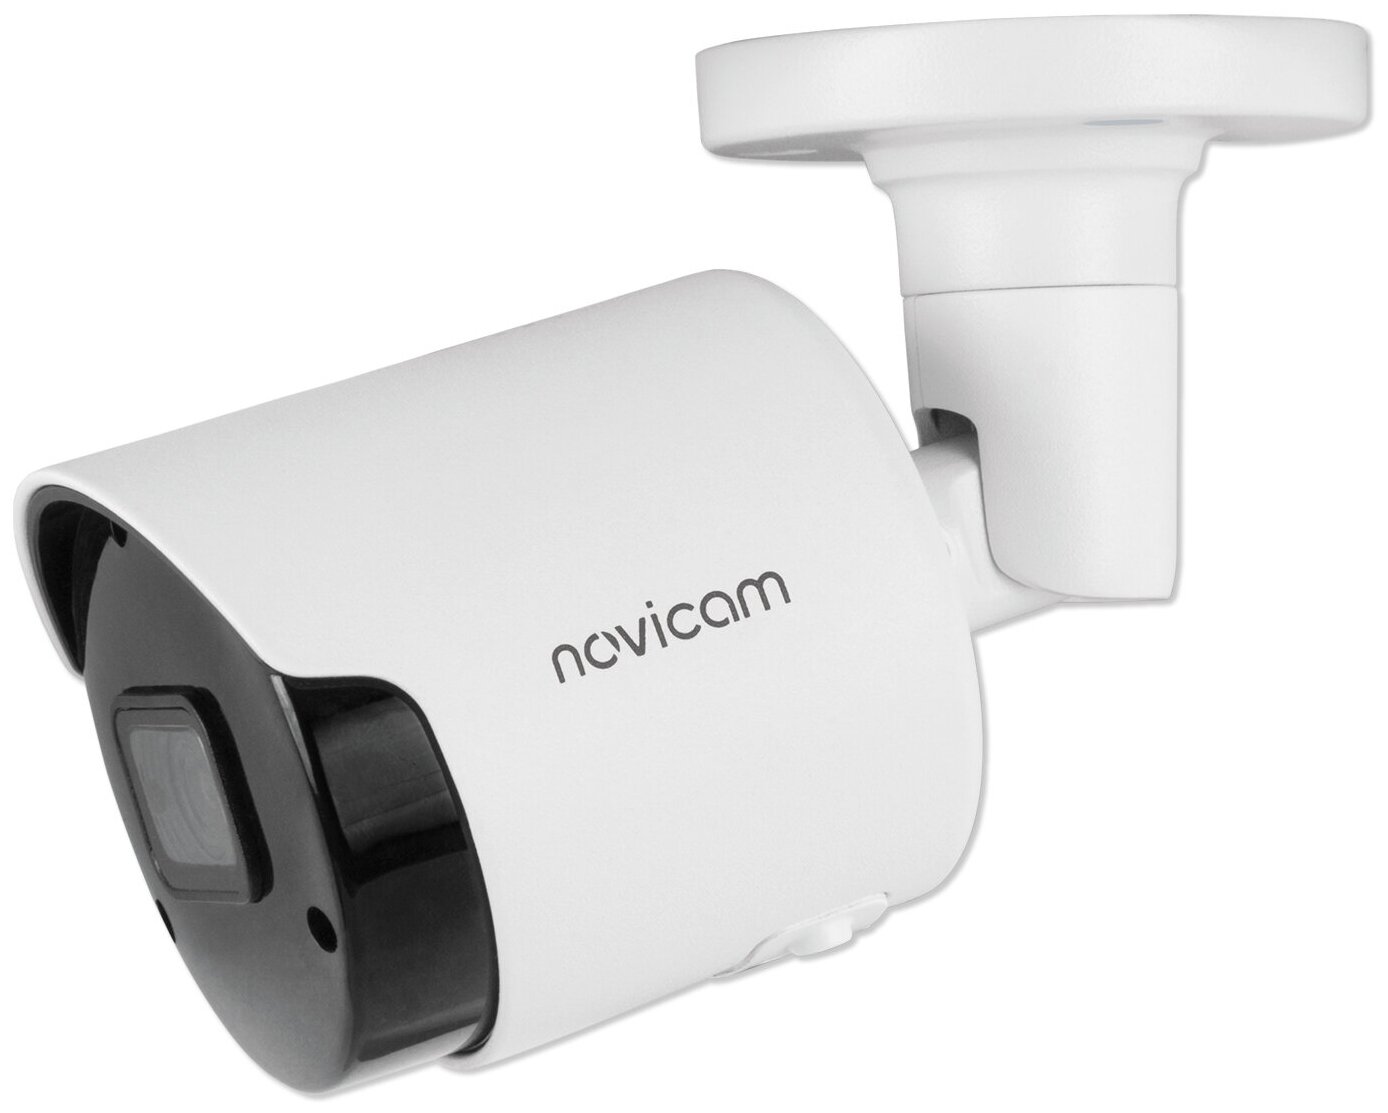 SMART 53 Novicam v.1294 - IP видеокамера пуля, 5 Мп 20 к/с, 12В/PoE, распознавание лиц